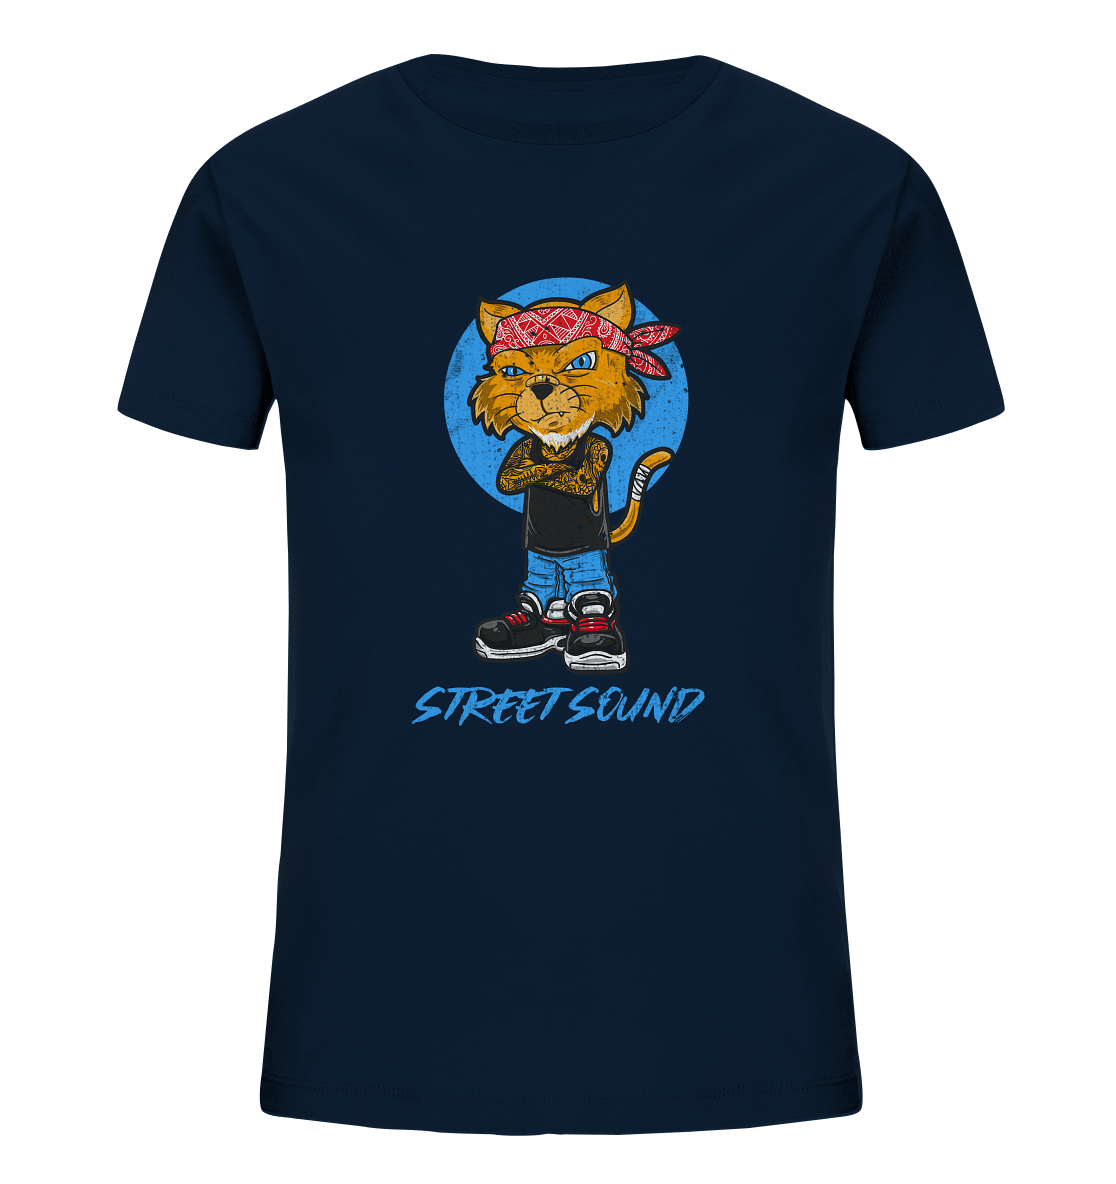 Kinder T-Shirt mit modischen Hip Hop Katze Print und Beschriftung "Street Sound"